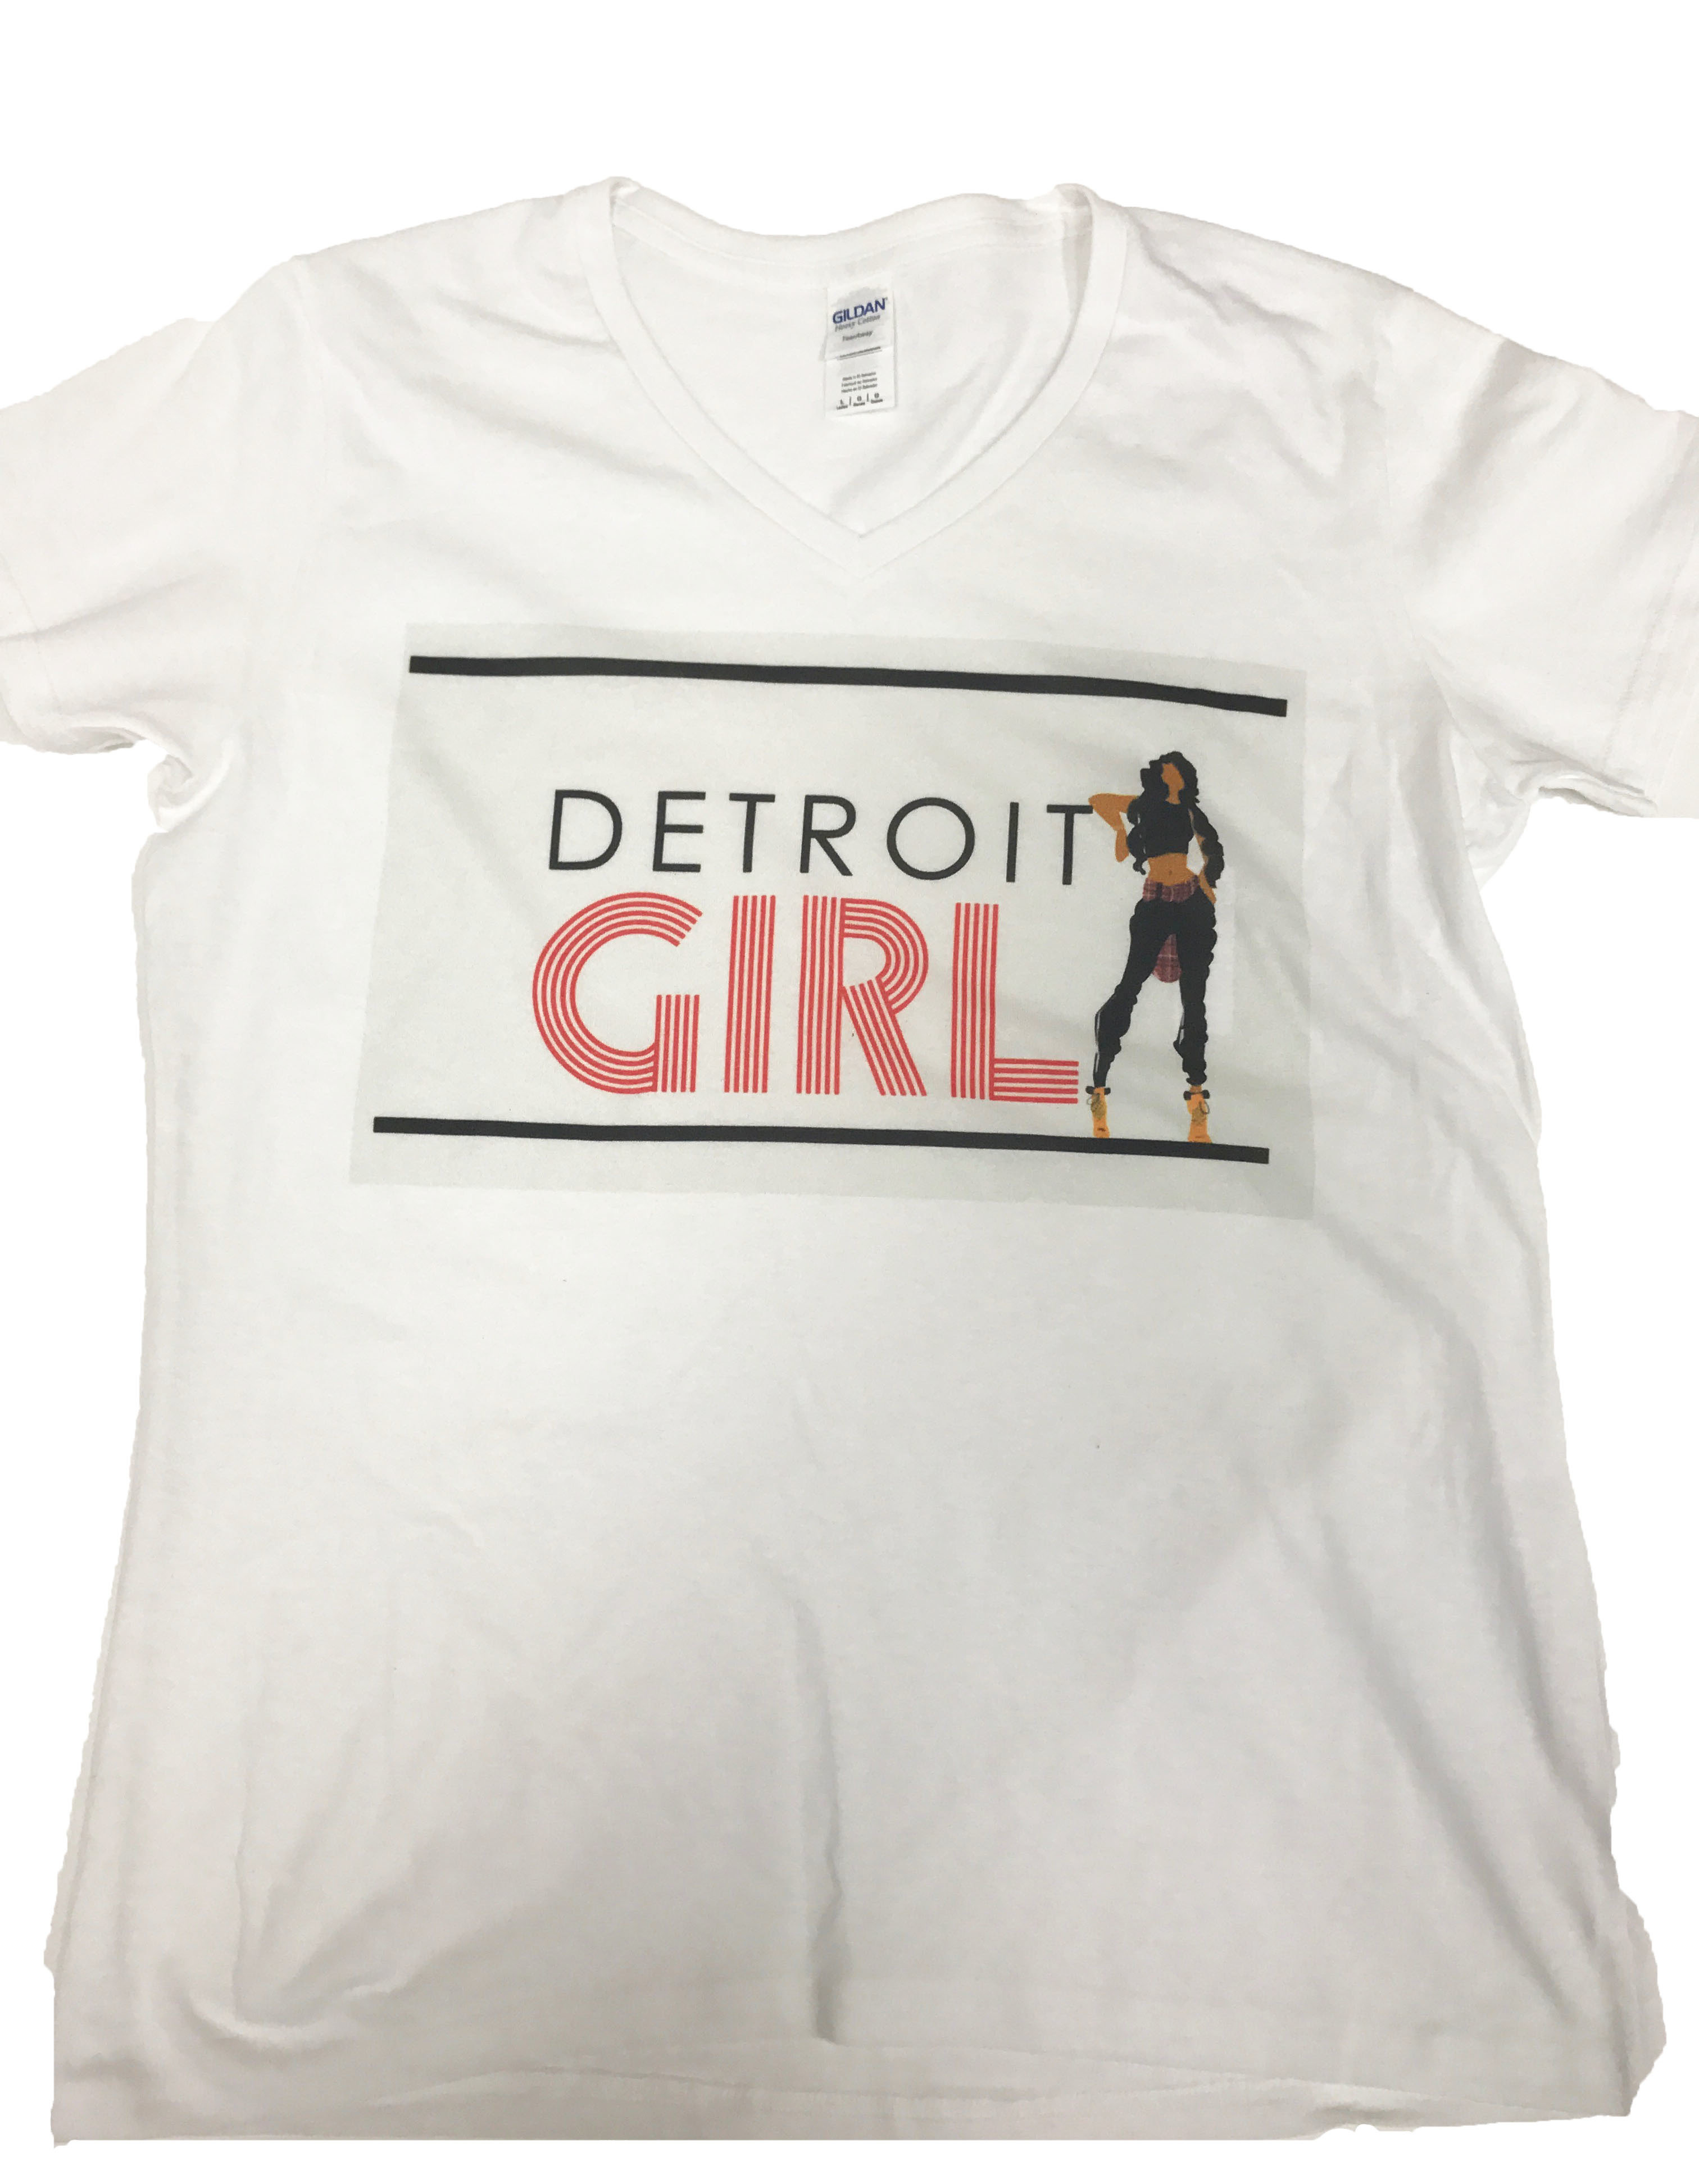 Detroit Girl Body tee 00182